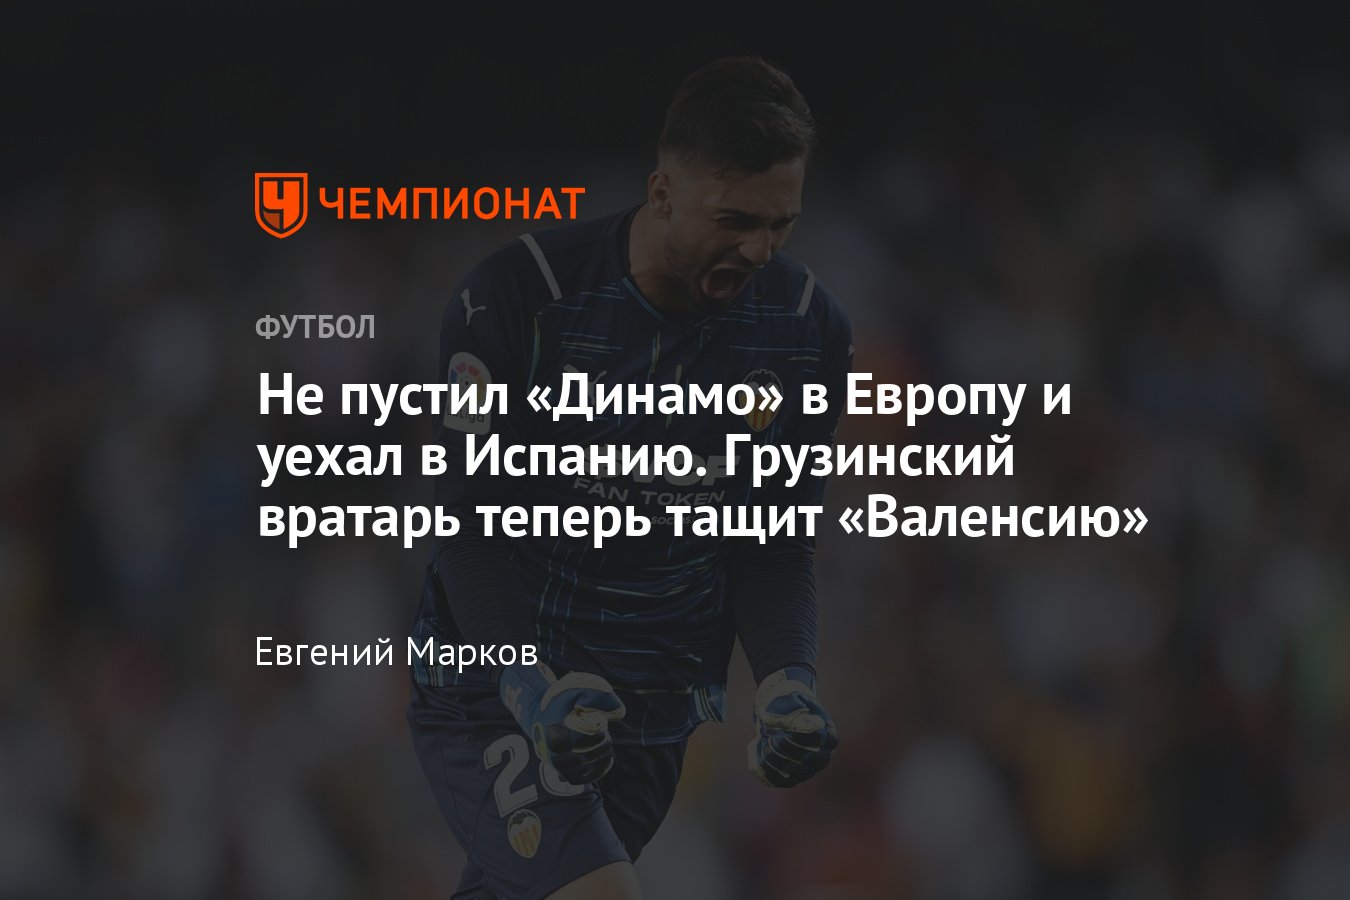 Мамардашвили футболист. Вратарь Валенсии грузин. Мамардашвили Валенсия.